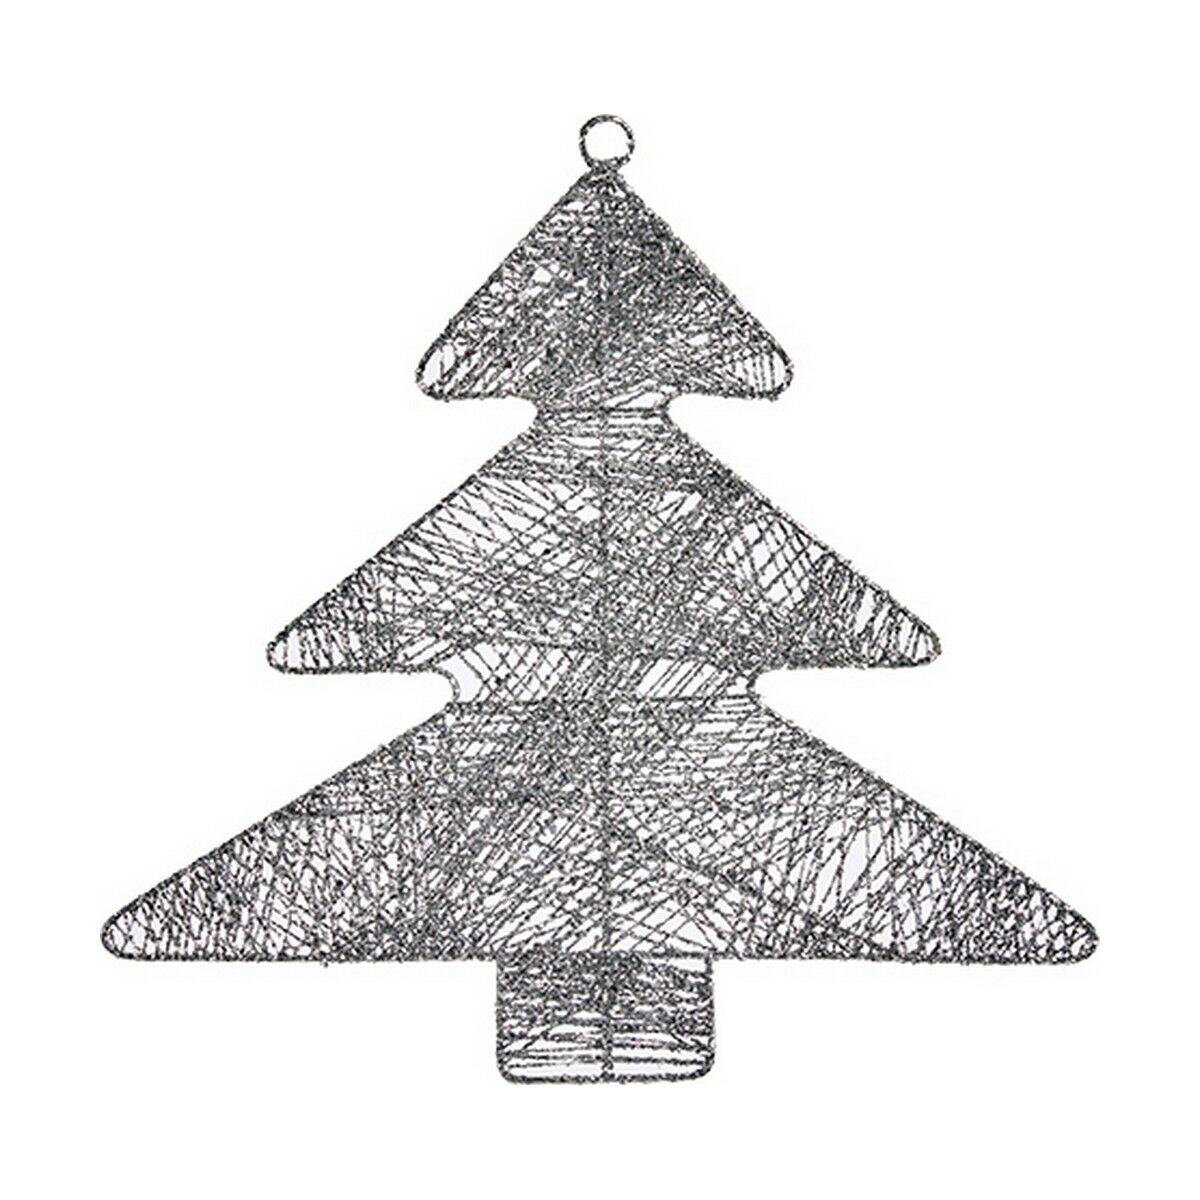 Weihnachtsschmuck Silberfarben Weihnachtsbaum 36,7 x 0,2 x 37,5 cm Metall Kunststoff